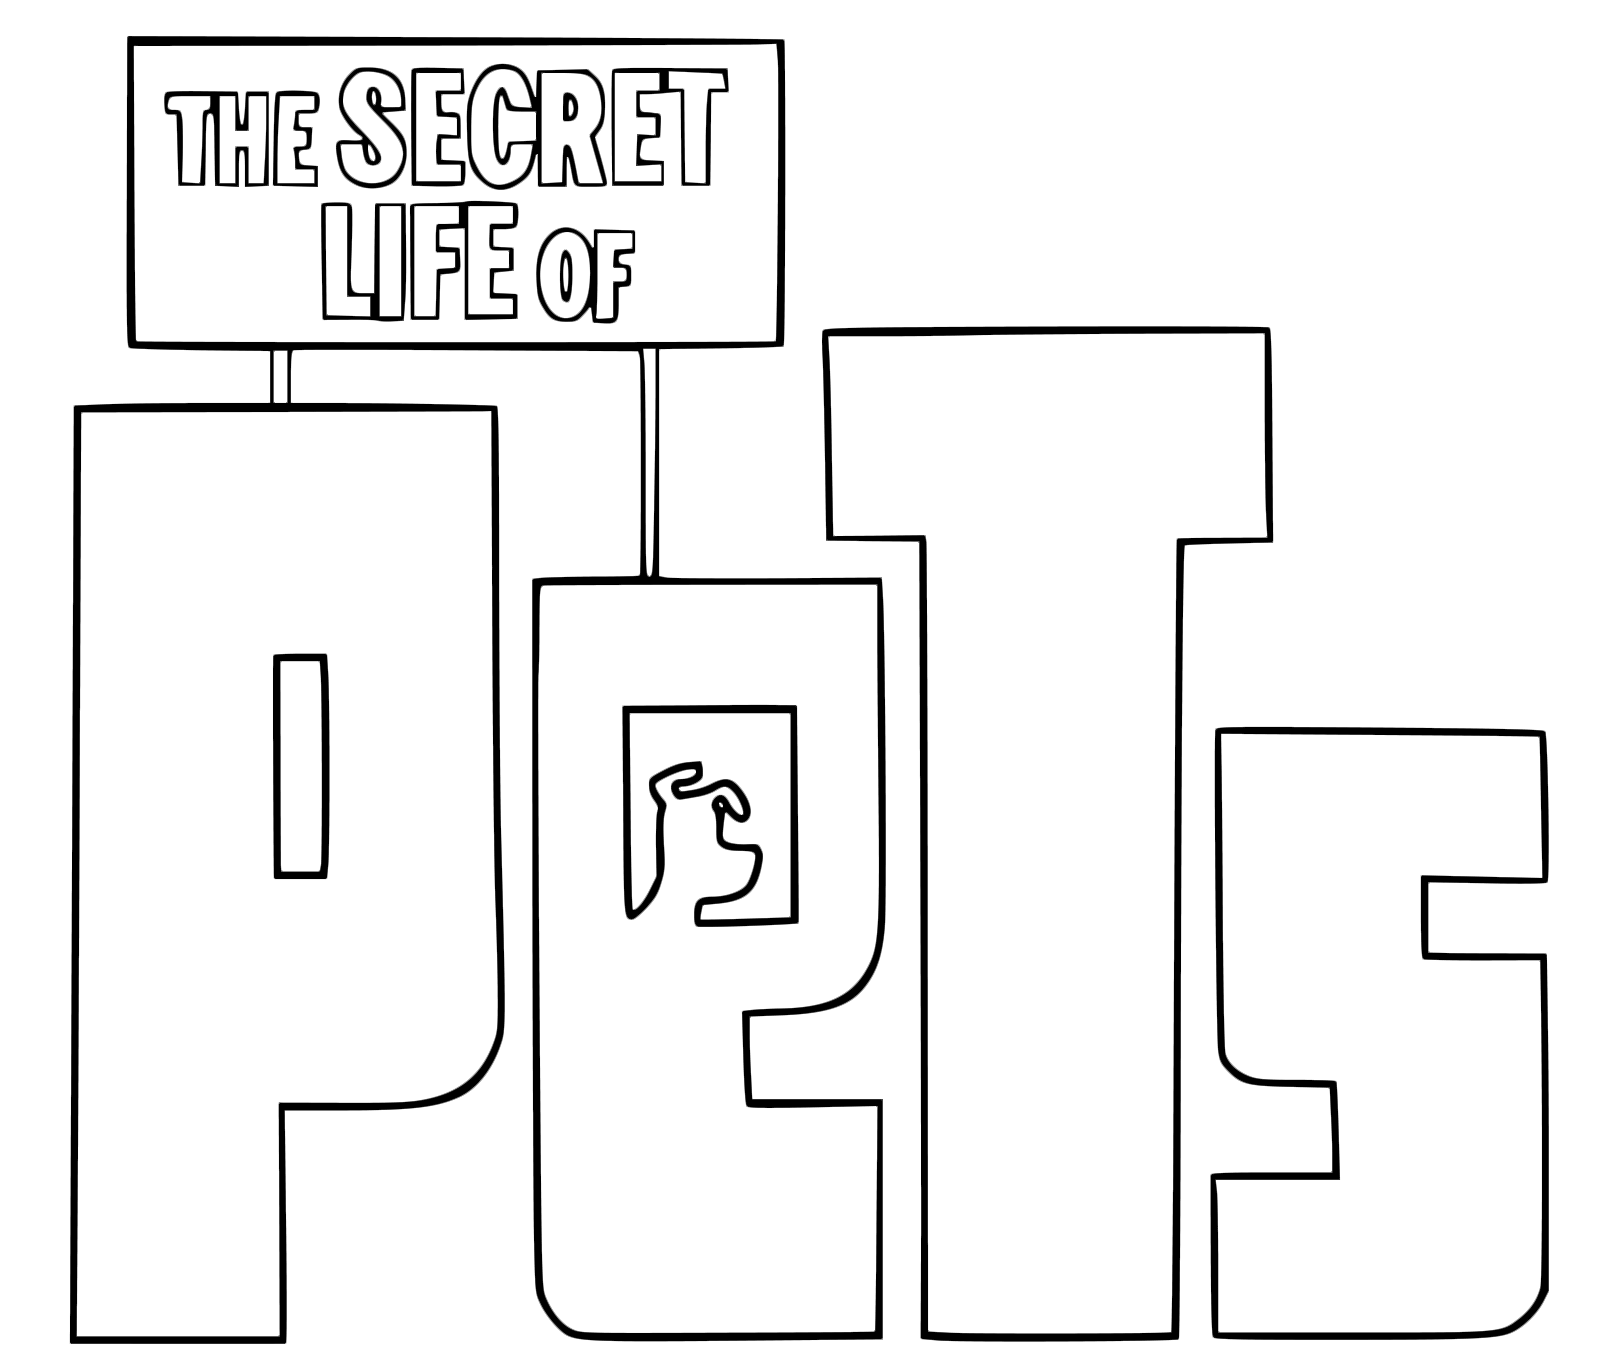 The Secret Life of Pets - The Secret Live of Pets